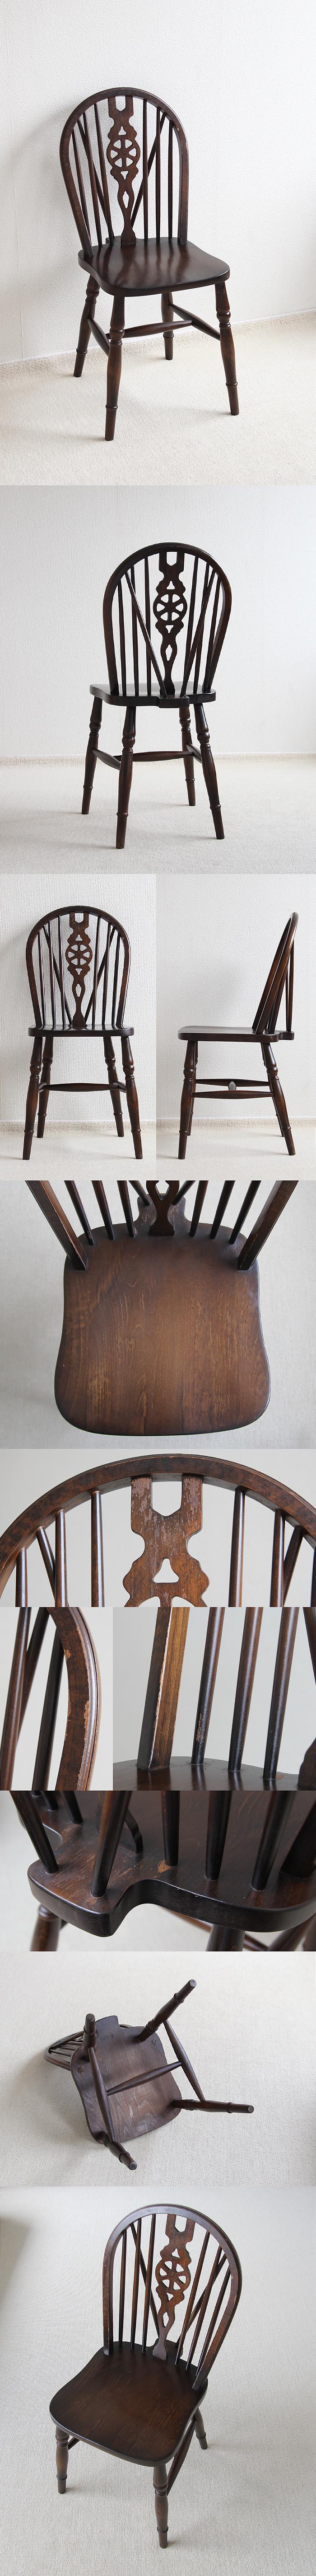 イギリス アンティーク調 ホイールバックチェア 木製椅子 インテリア 家具「車輪モチーフ」P-324